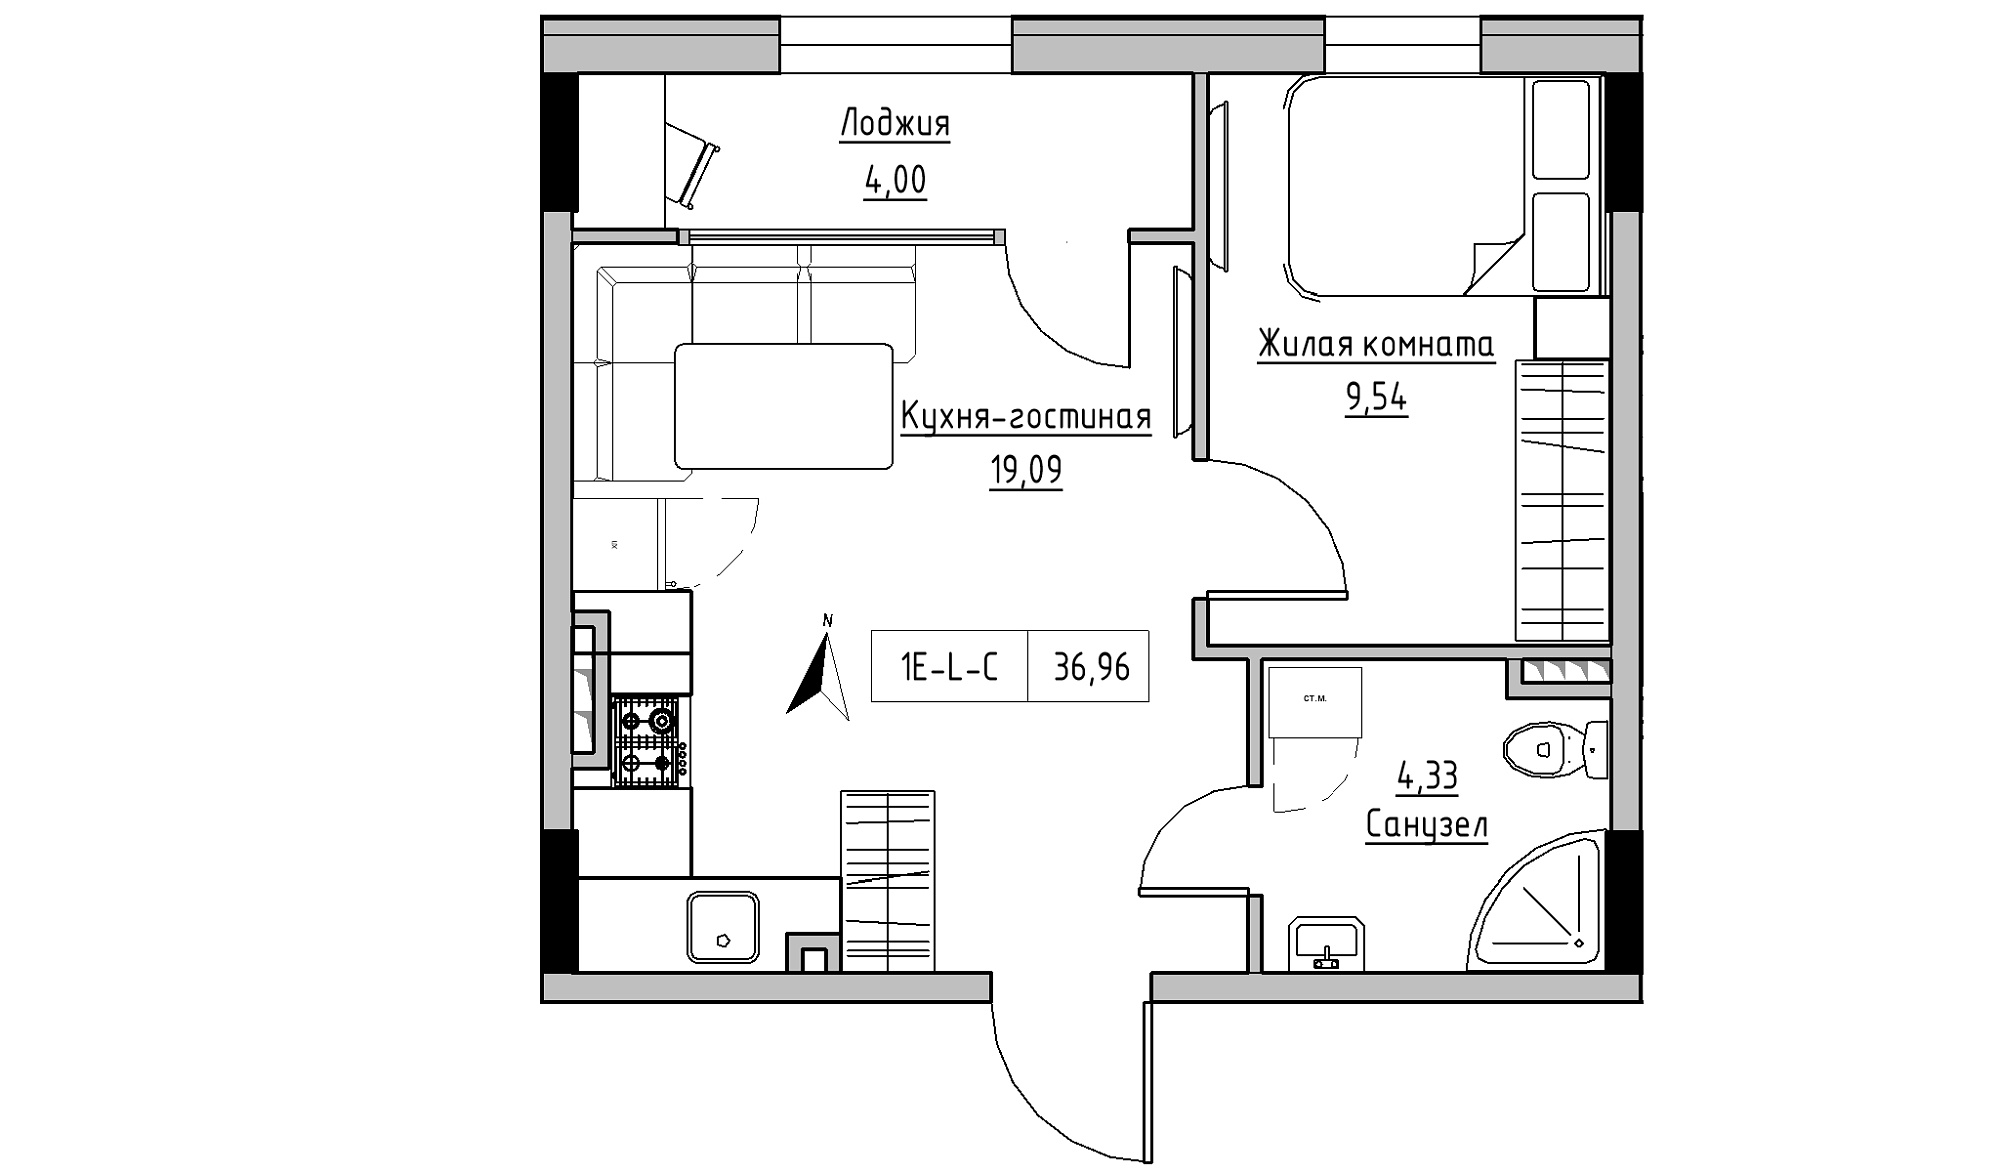 Планировка 1-к квартира площей 36.96м2, KS-025-03/0008.